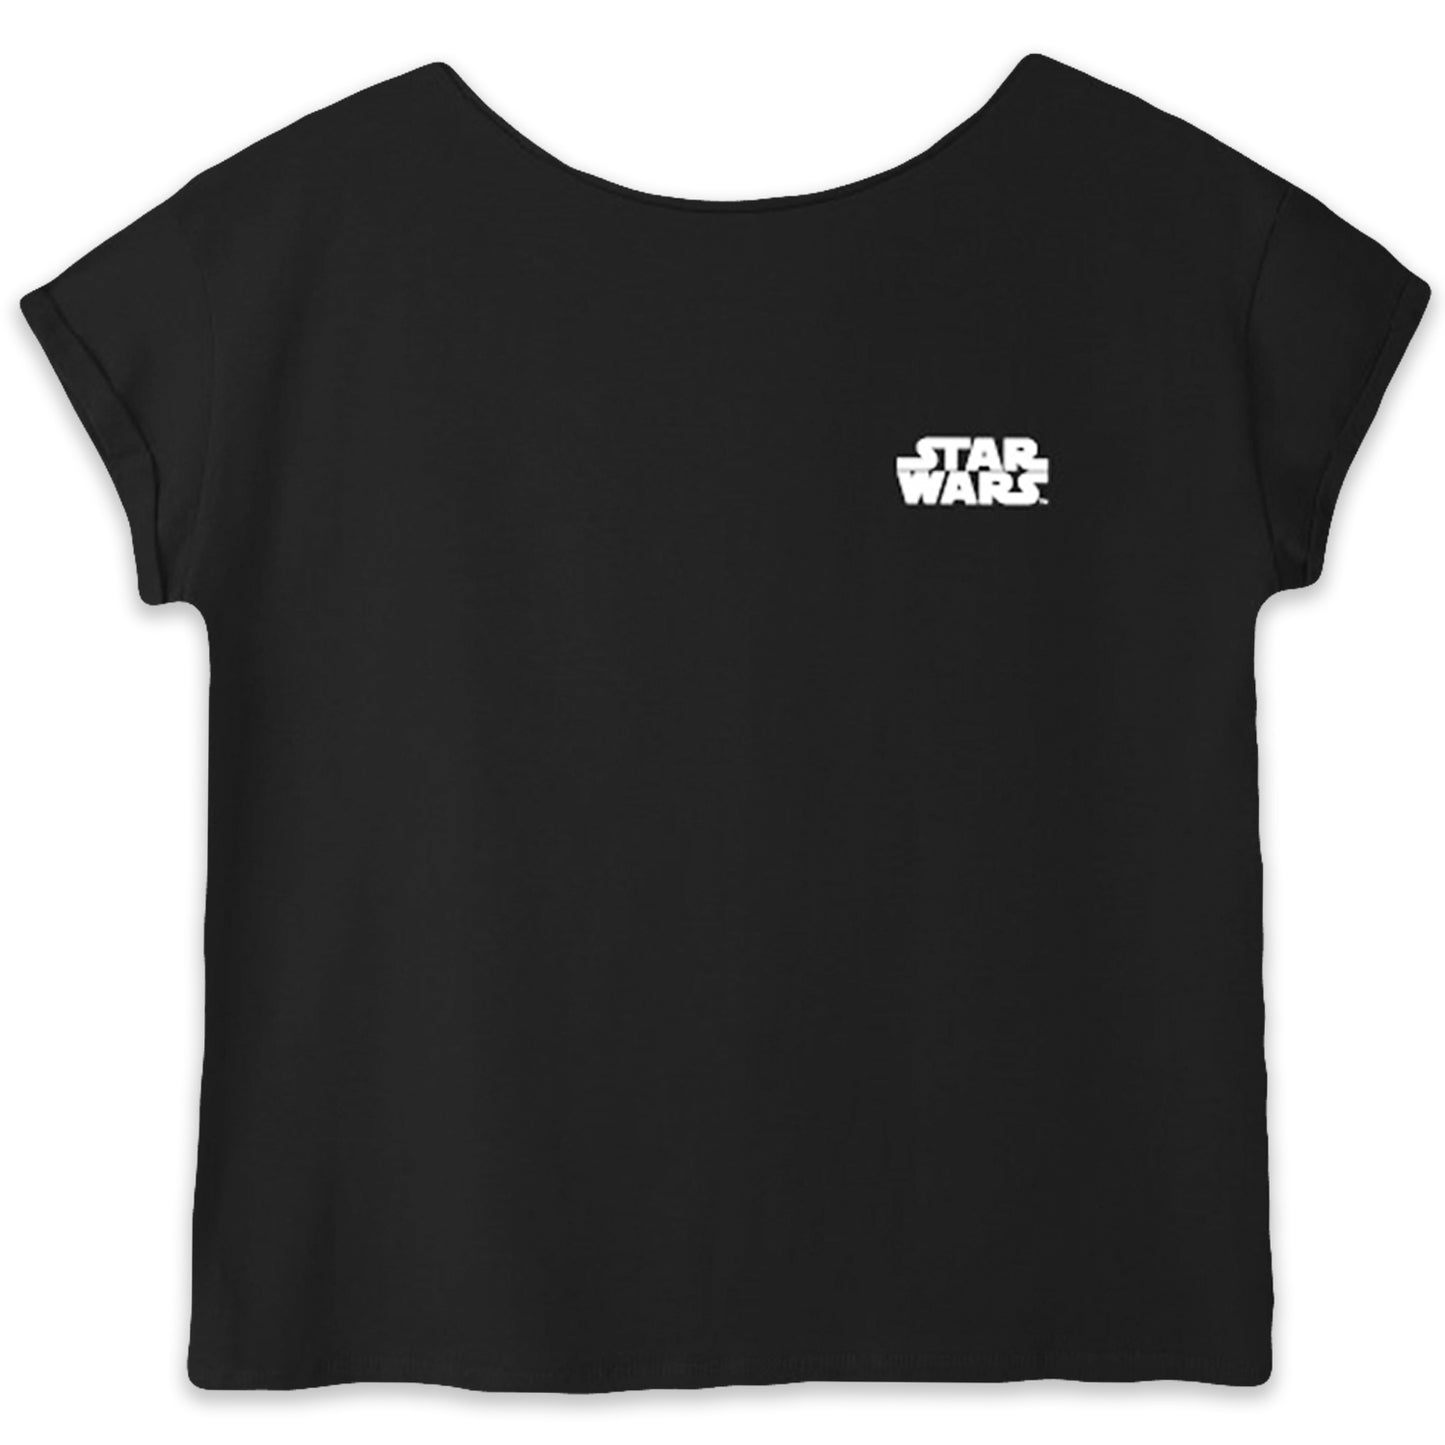 Star Wars Women's Short Sleeve T-Shirt Cotton